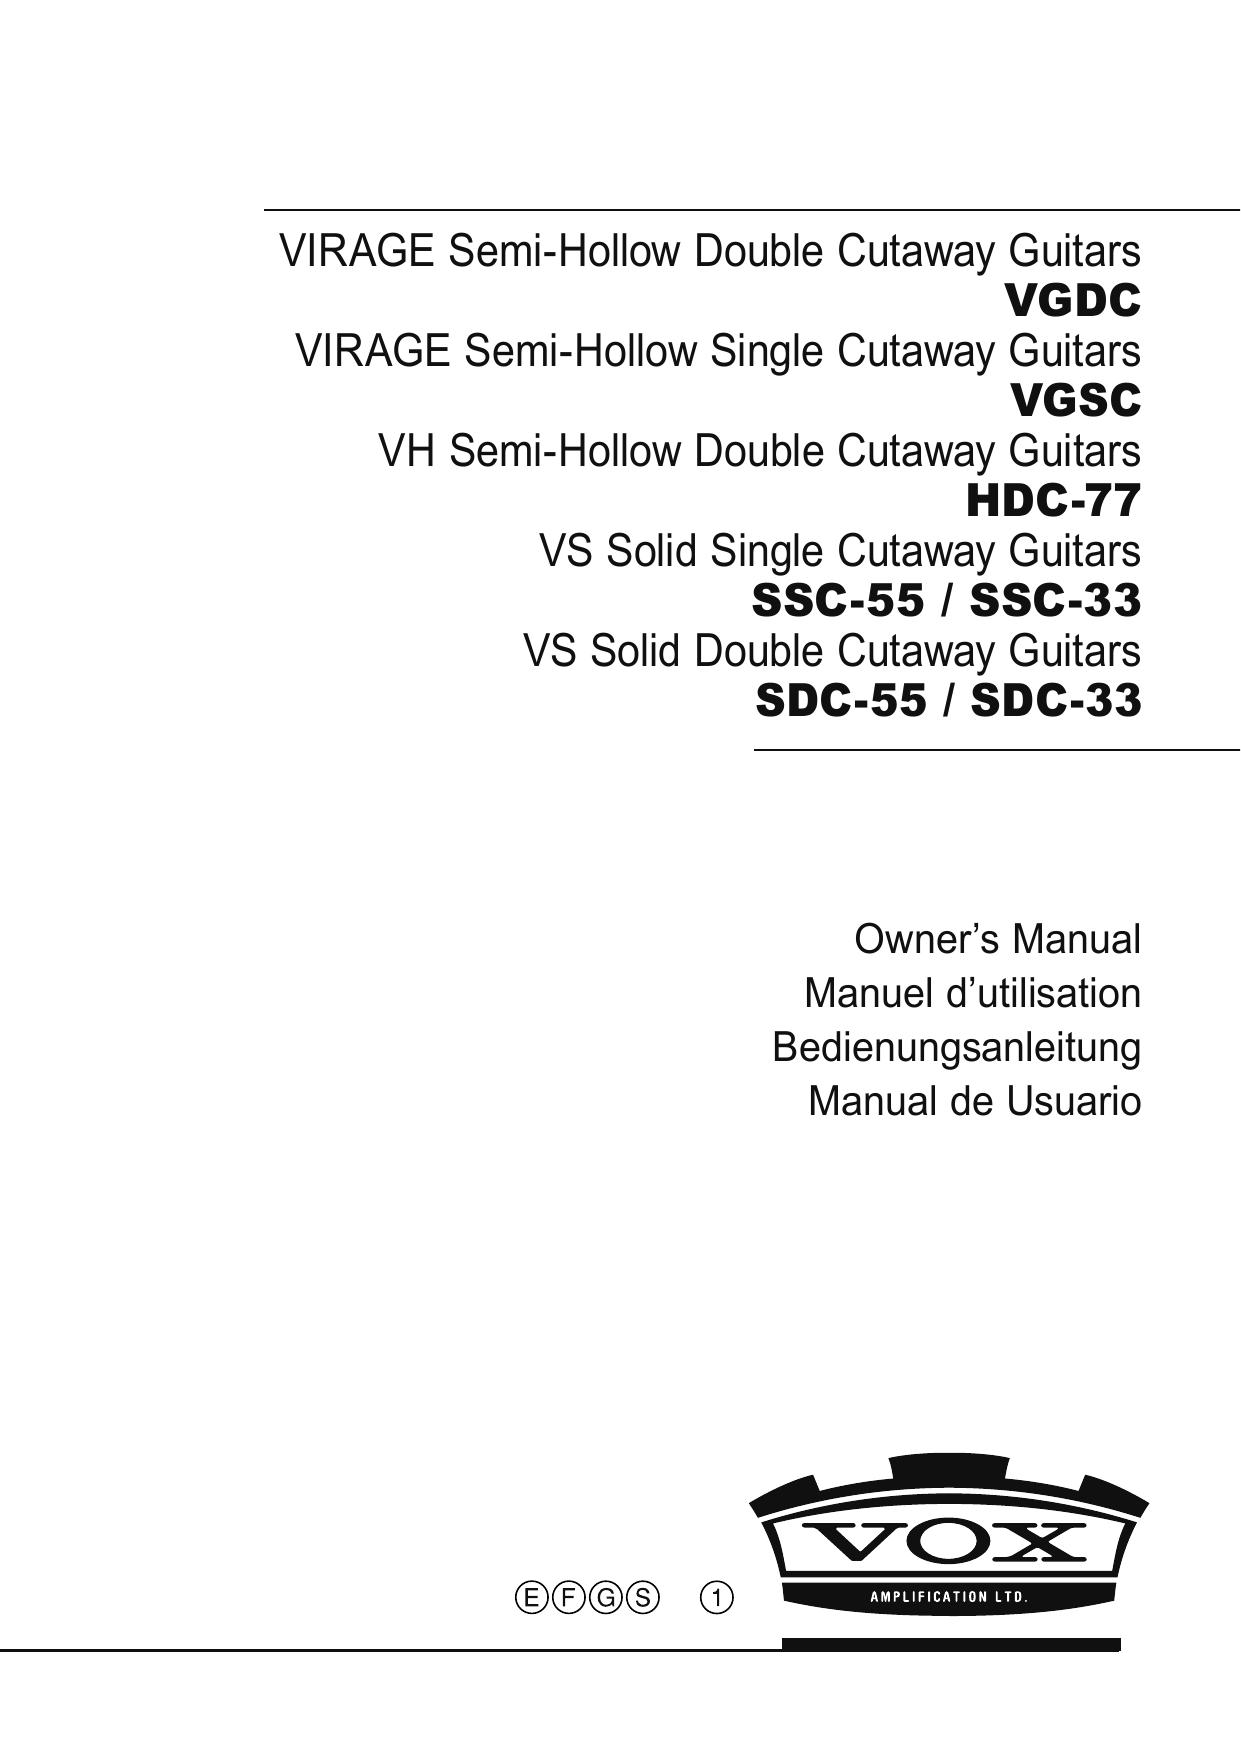 Vox SDC-55 Guitar User Manual